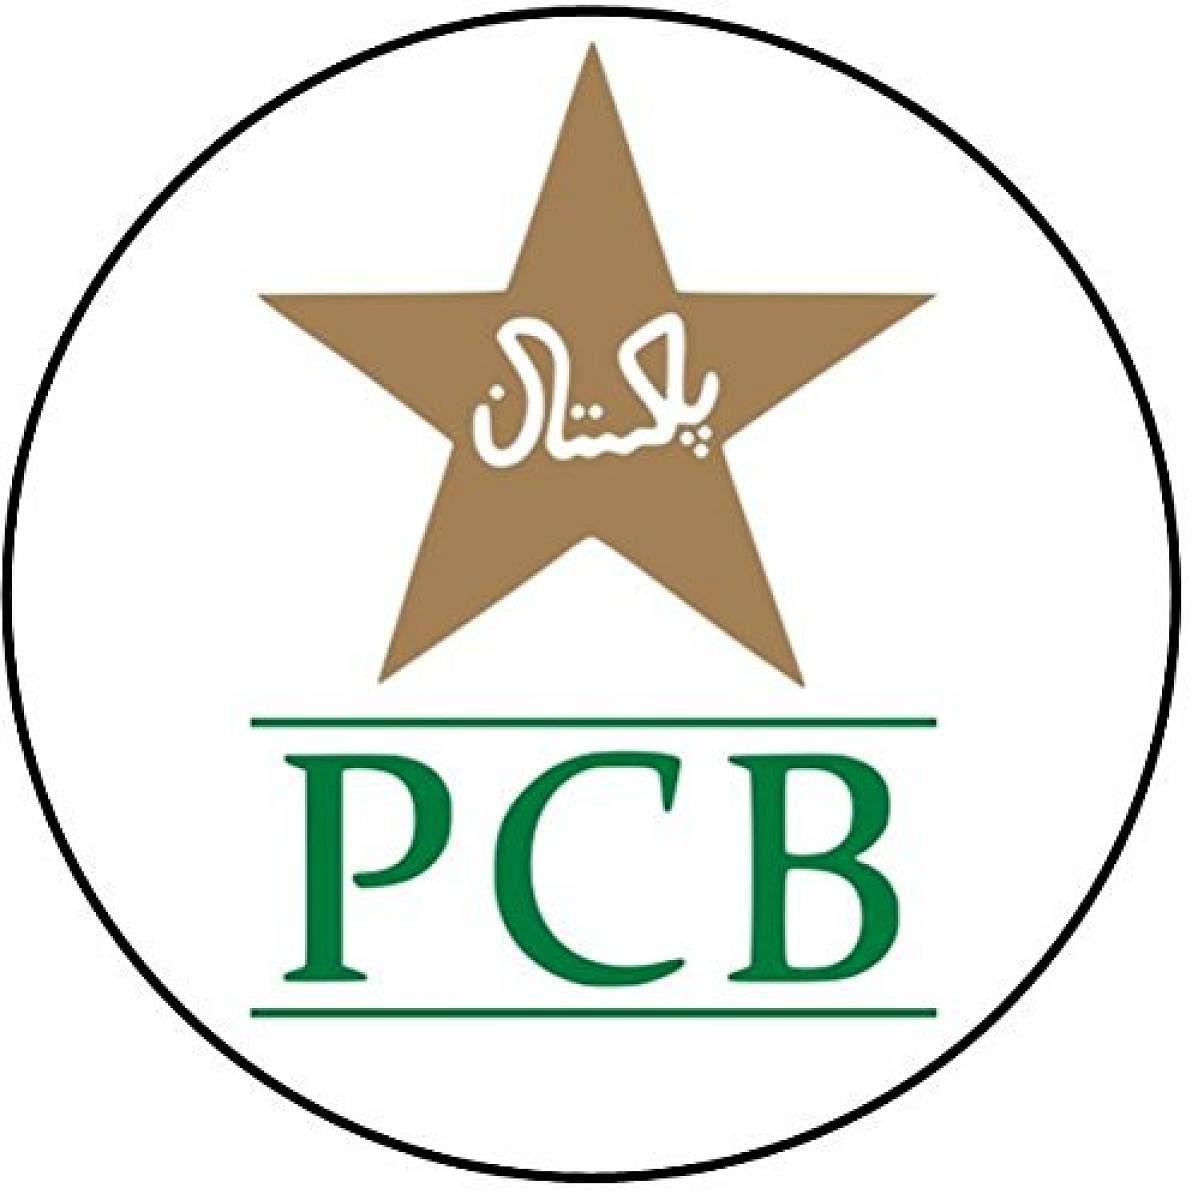 Pakistan Cricket Board logo